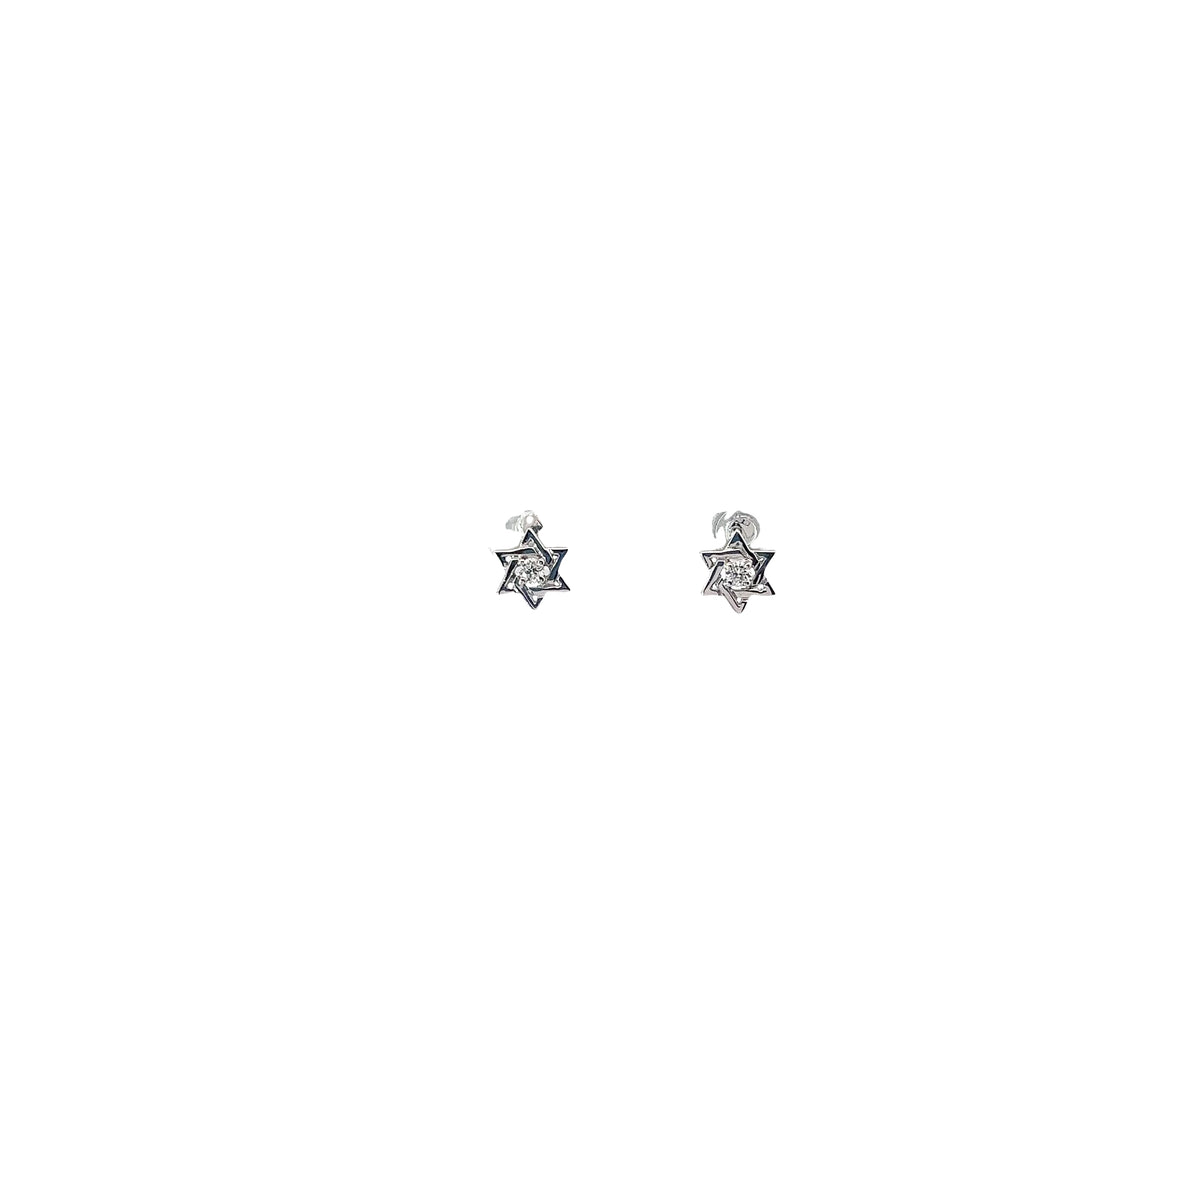 Baby 14k white gold Diamond Star of David earrings